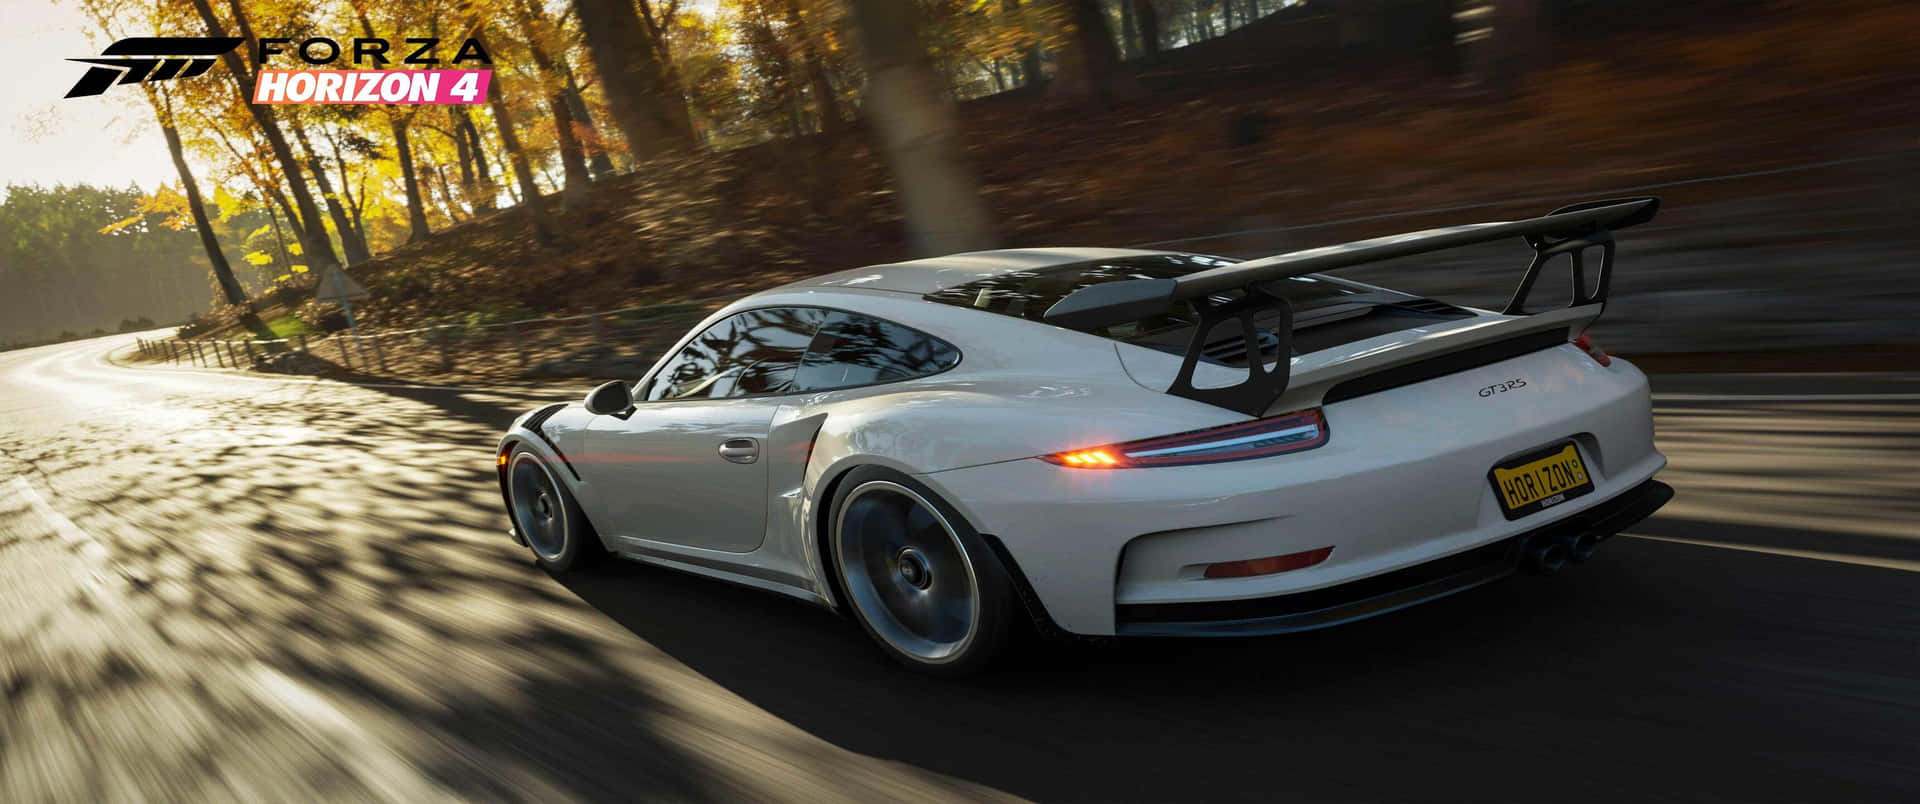 Fondode Pantalla De Porsche 911 Gt3 De Forza Horizon 4 En Resolución 3440x1440p